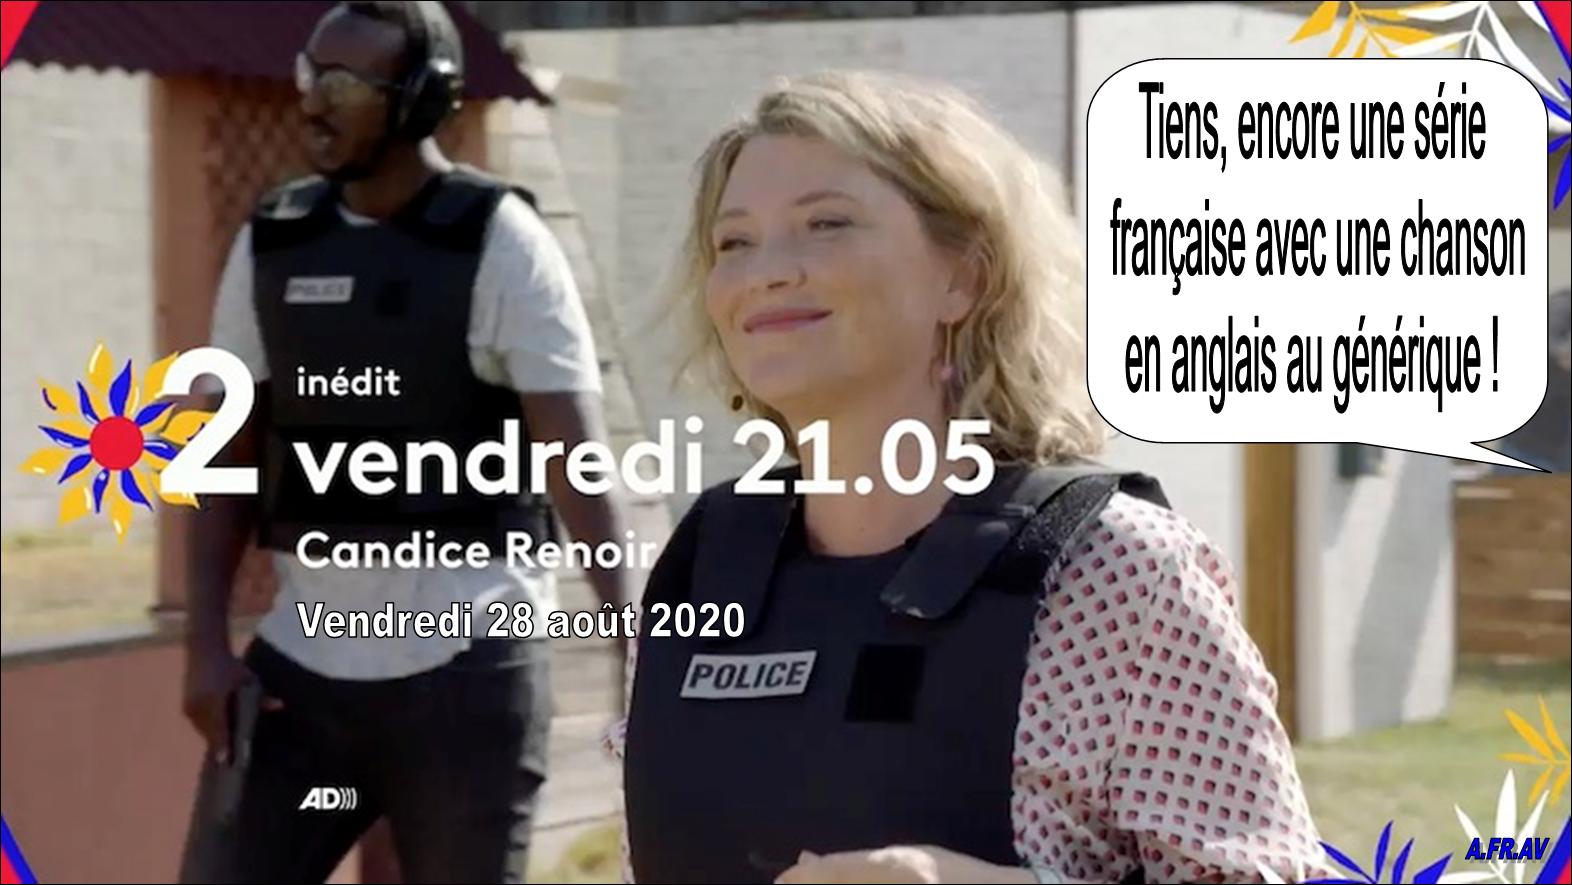 Série Candice Renoir avec Cécile Bois sur France 2